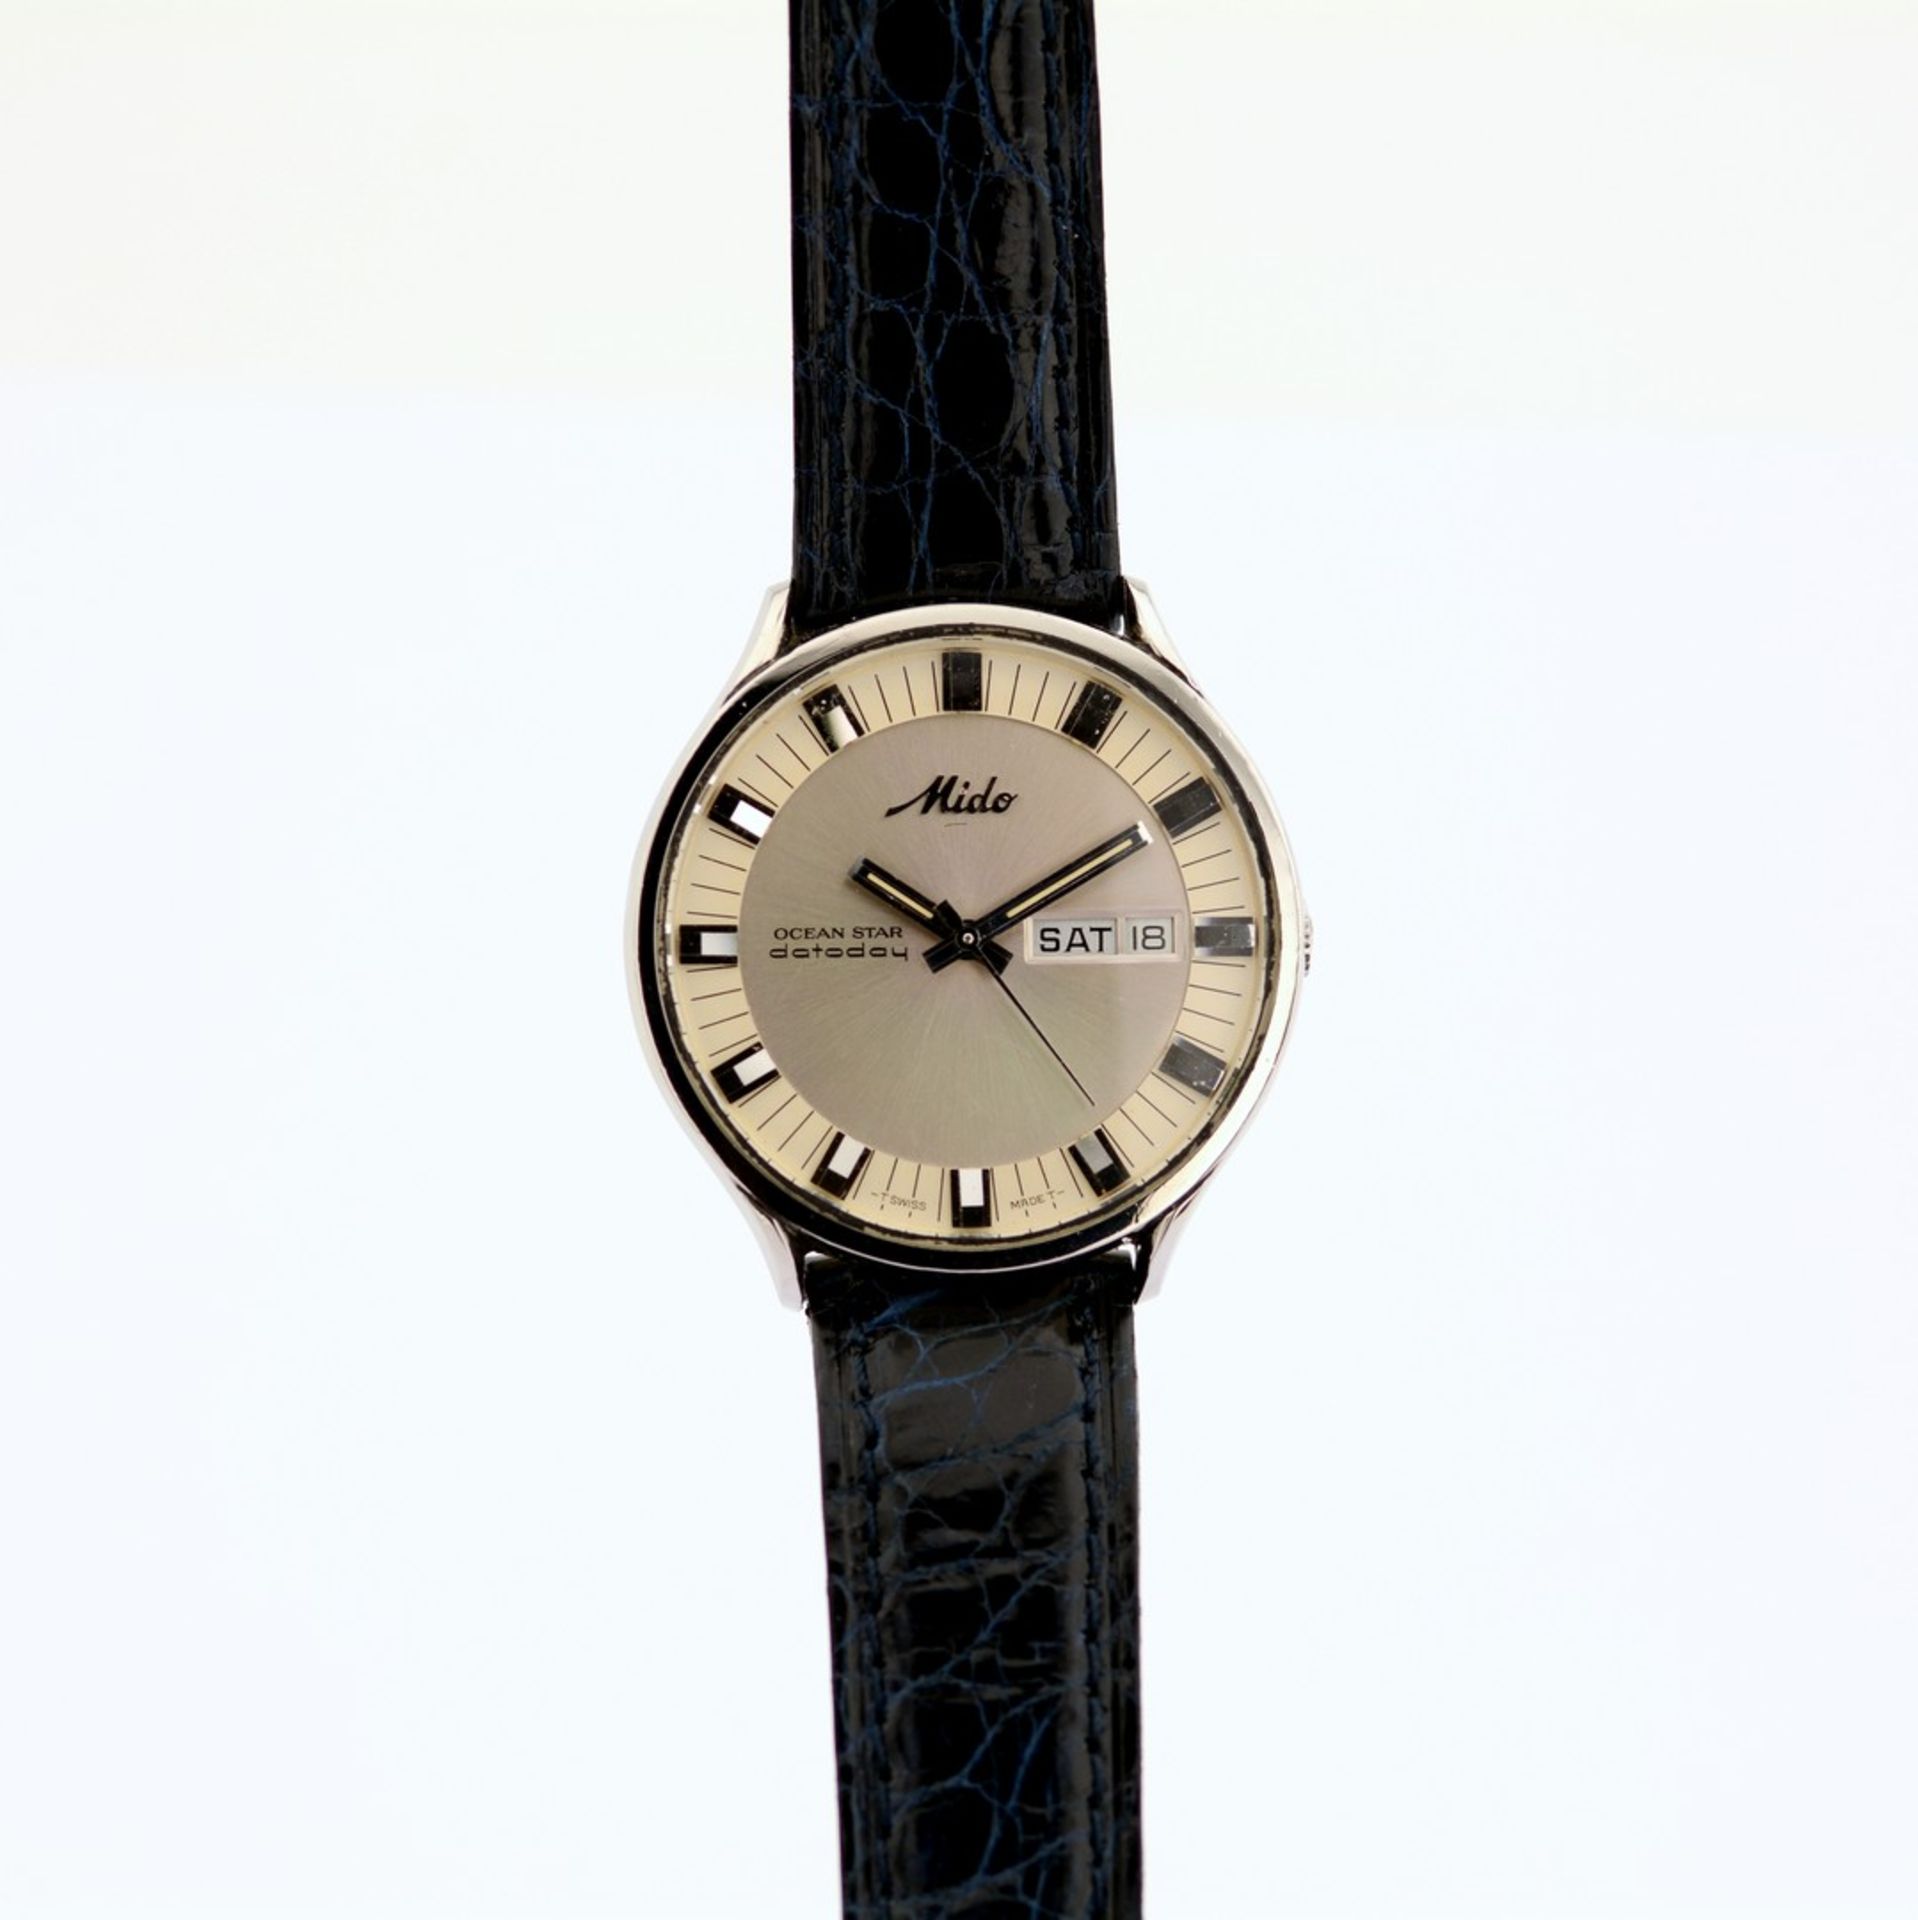 Mido / Ocean Star - Datoday - Day/Date - Gentlemen's Steel Wristwatch - Image 3 of 7